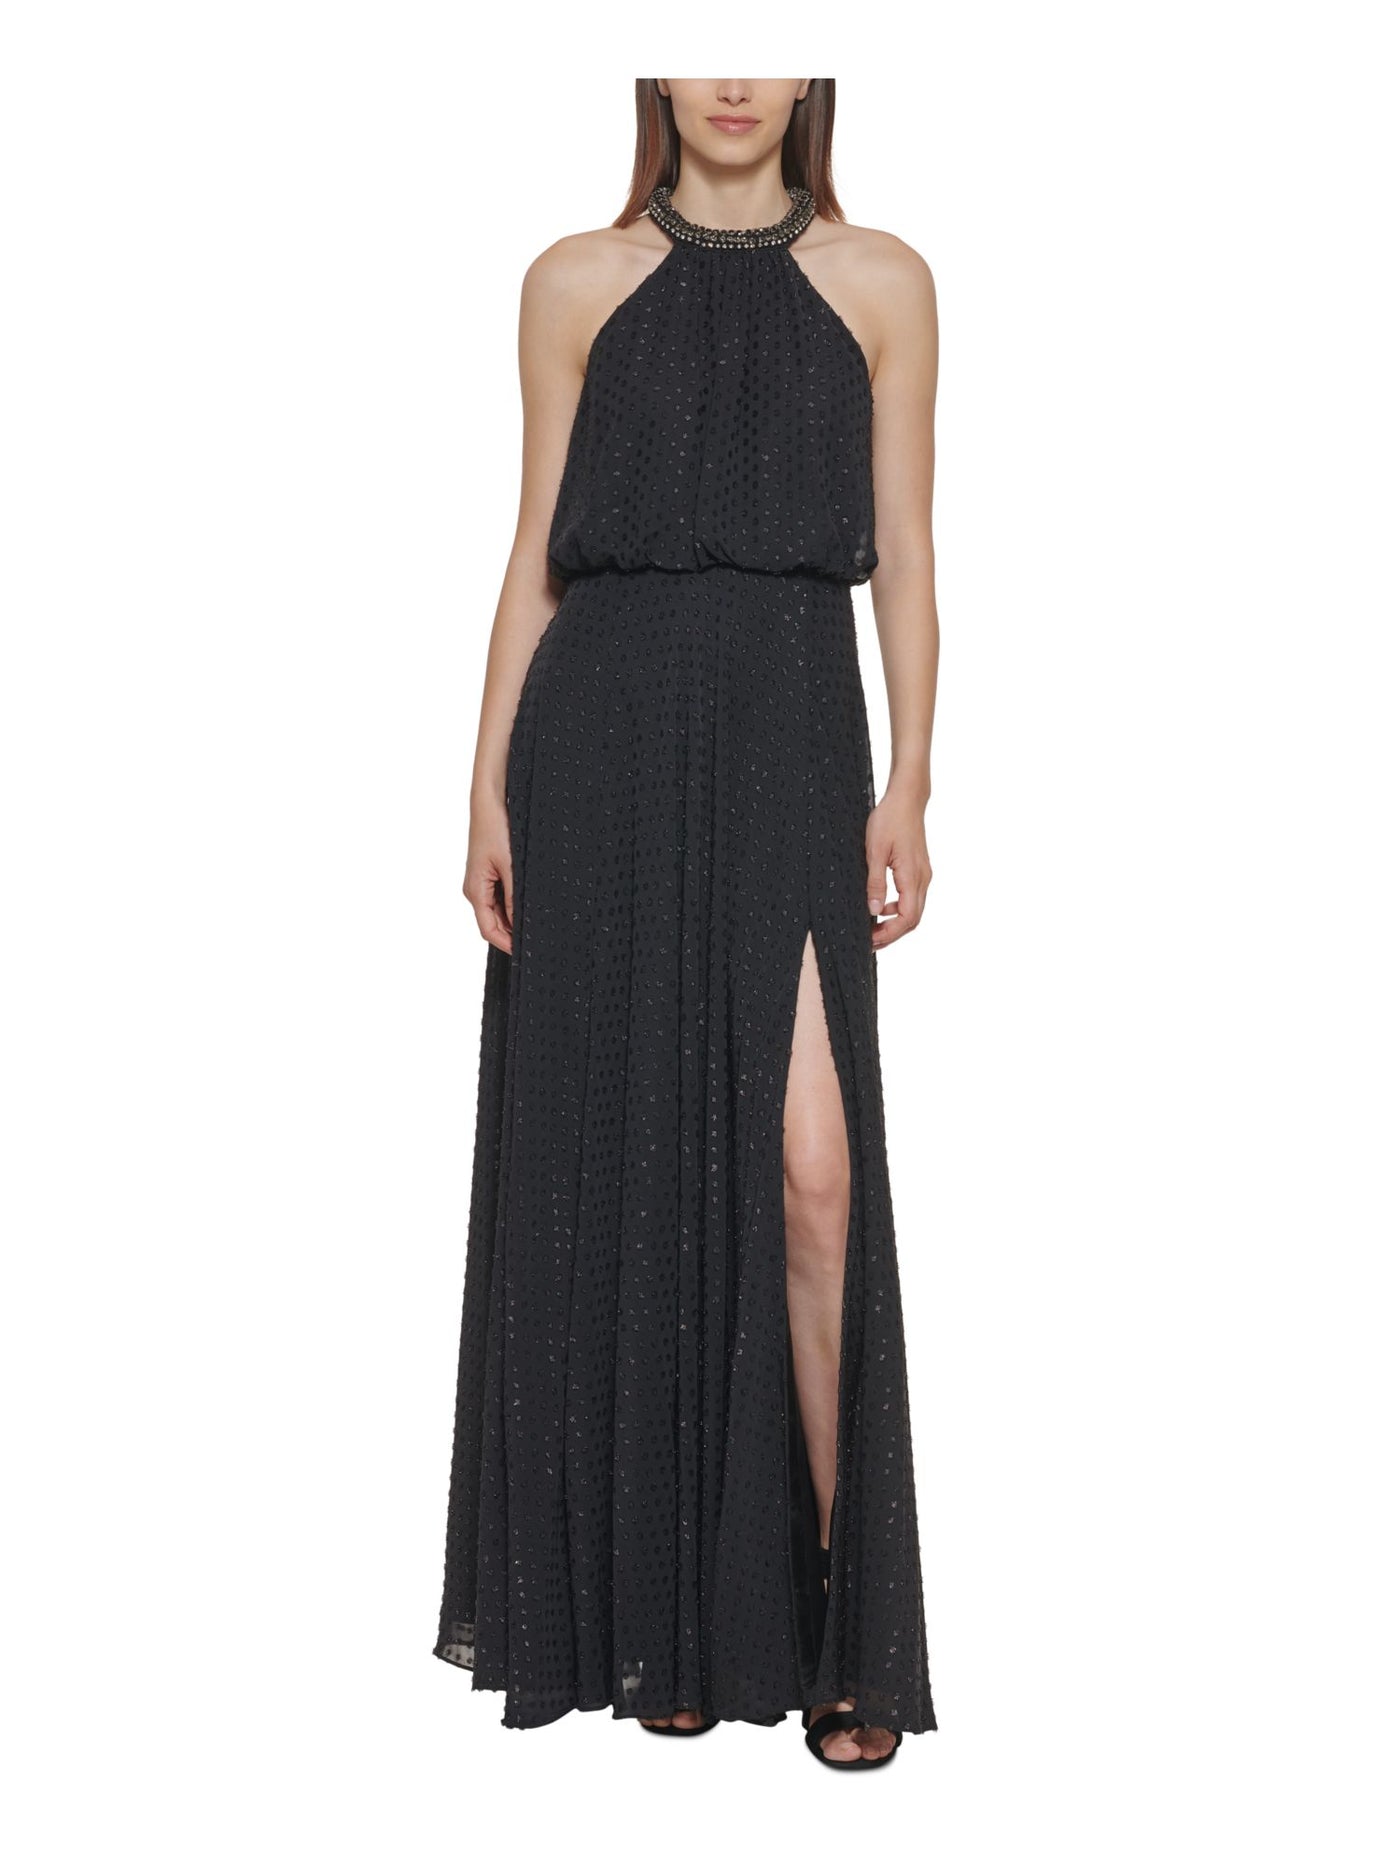 CALVIN KLEIN Womens Black Embellished Zippered Thigh High Slit Sleeveless Halter Full-Length Formal Gown Dress 10